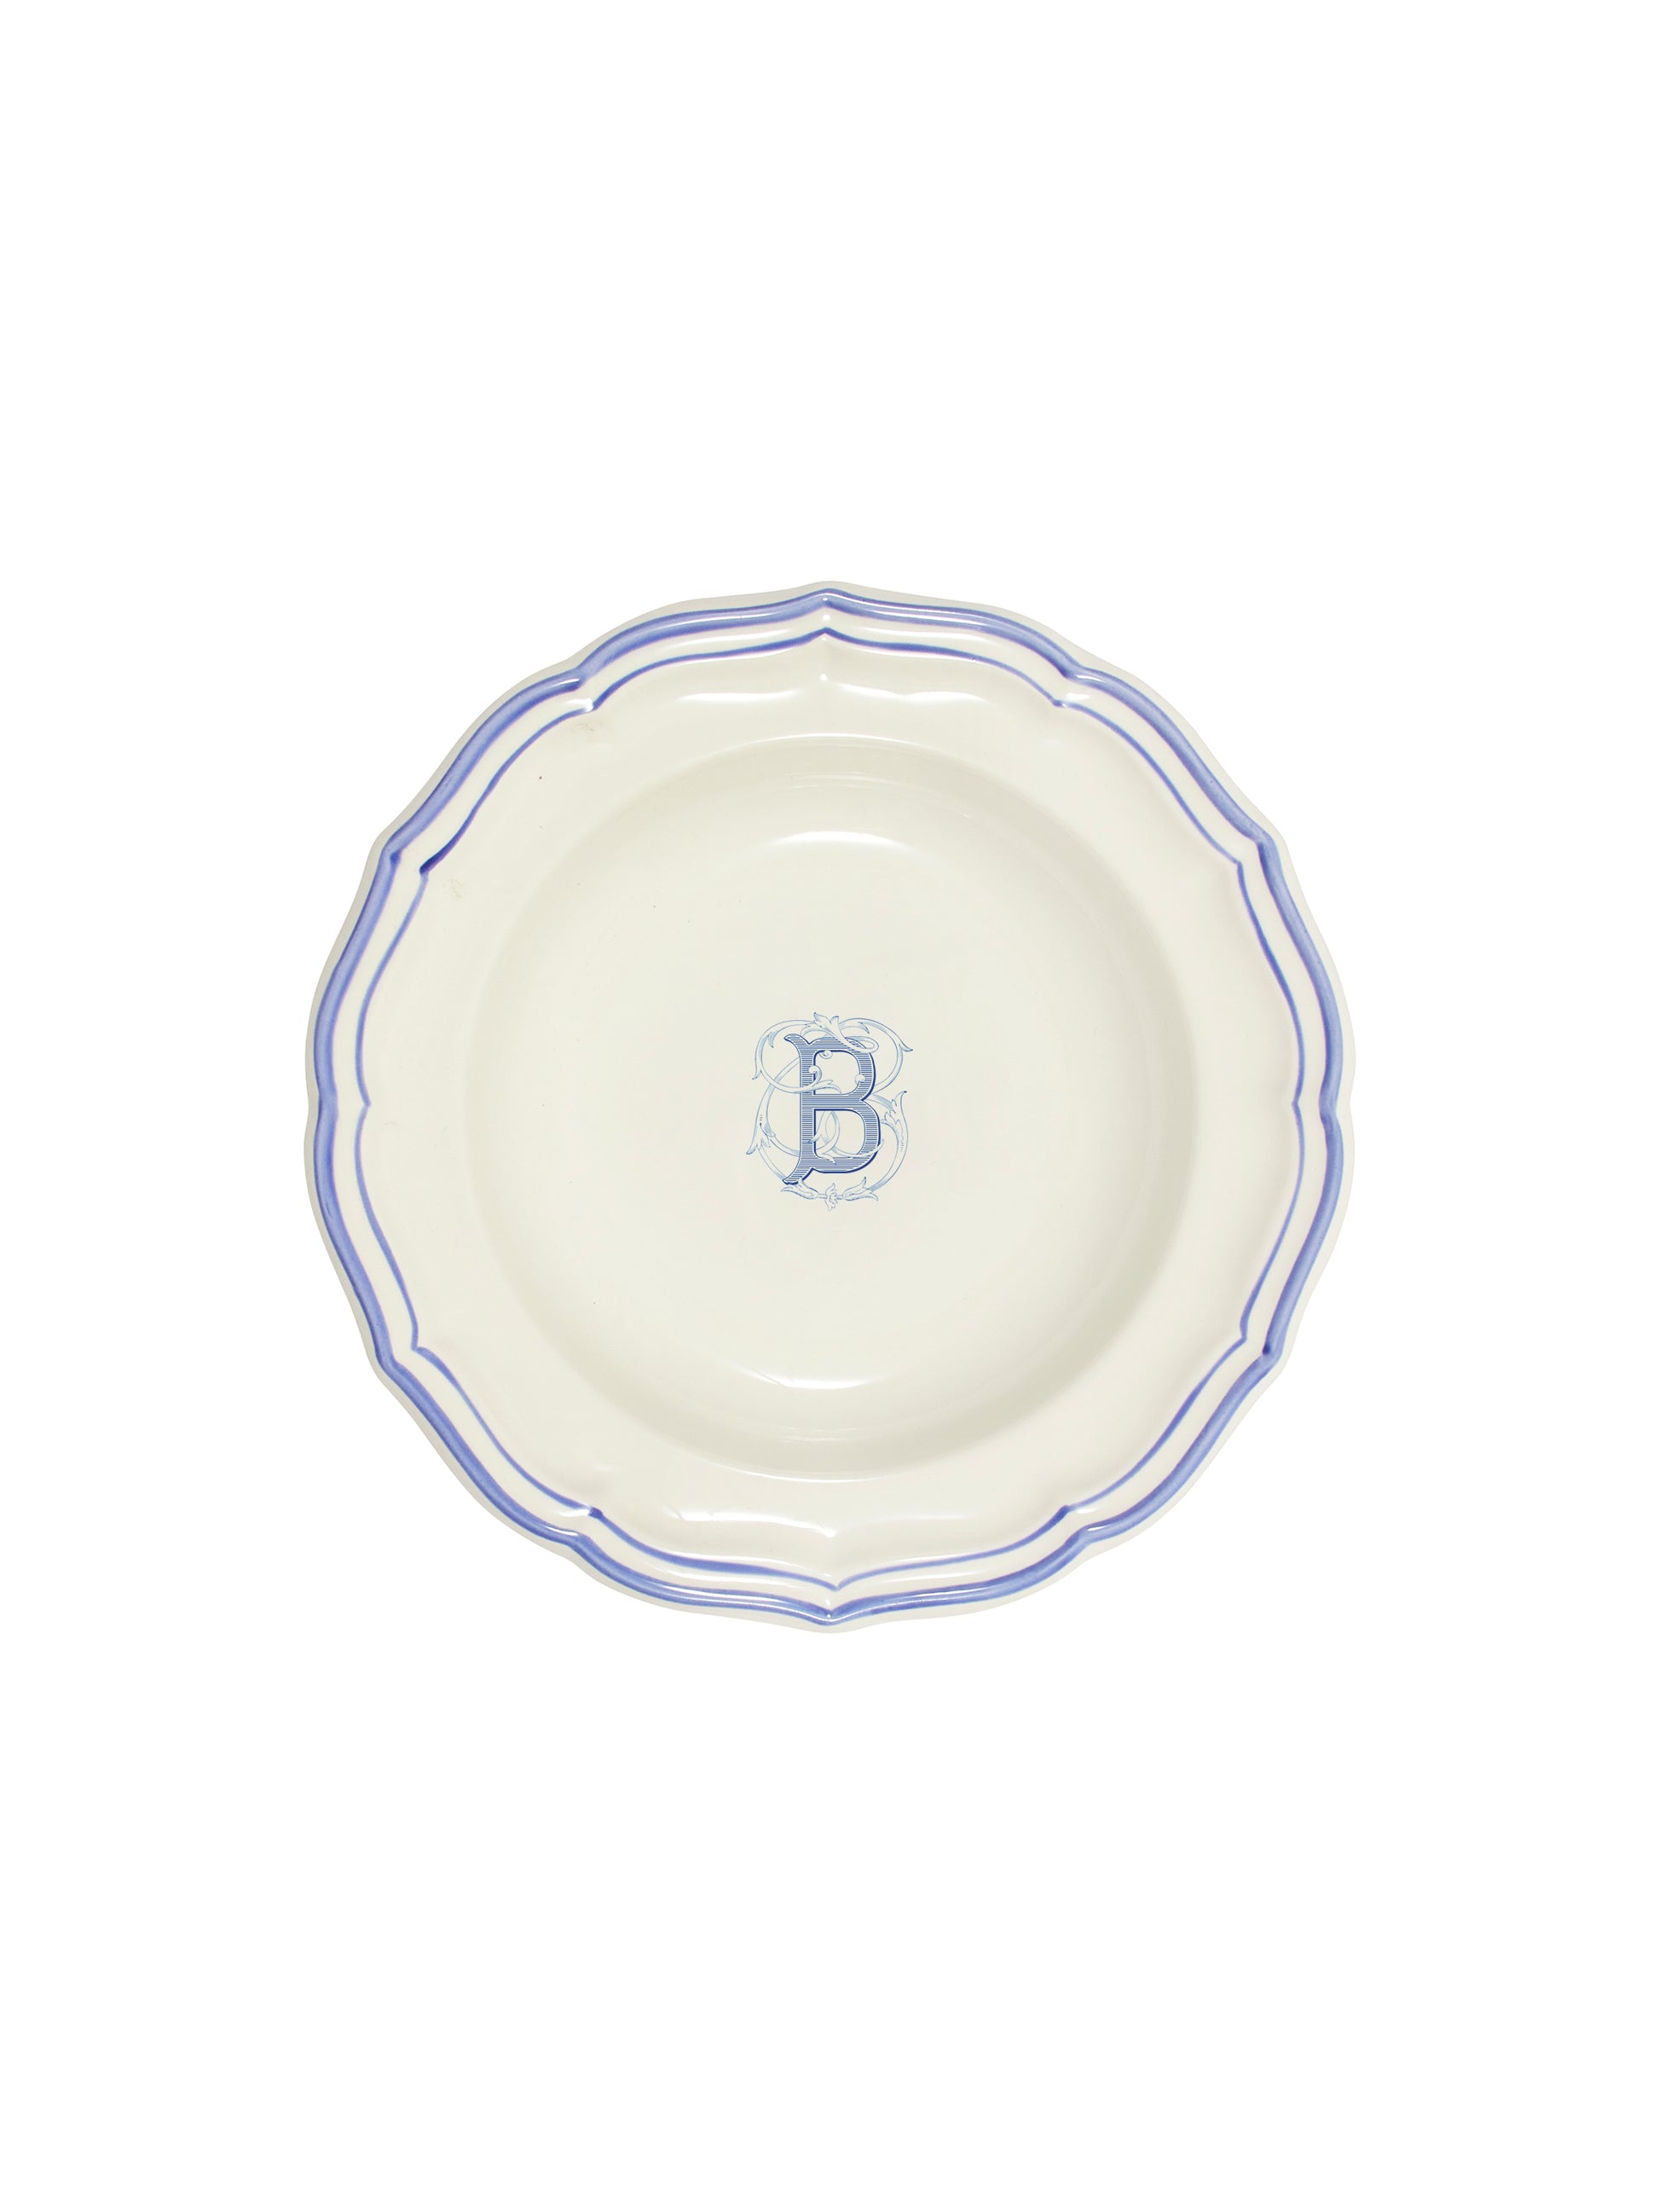 Gien Filet Bleu Monogram Soup Plate B Weston Table